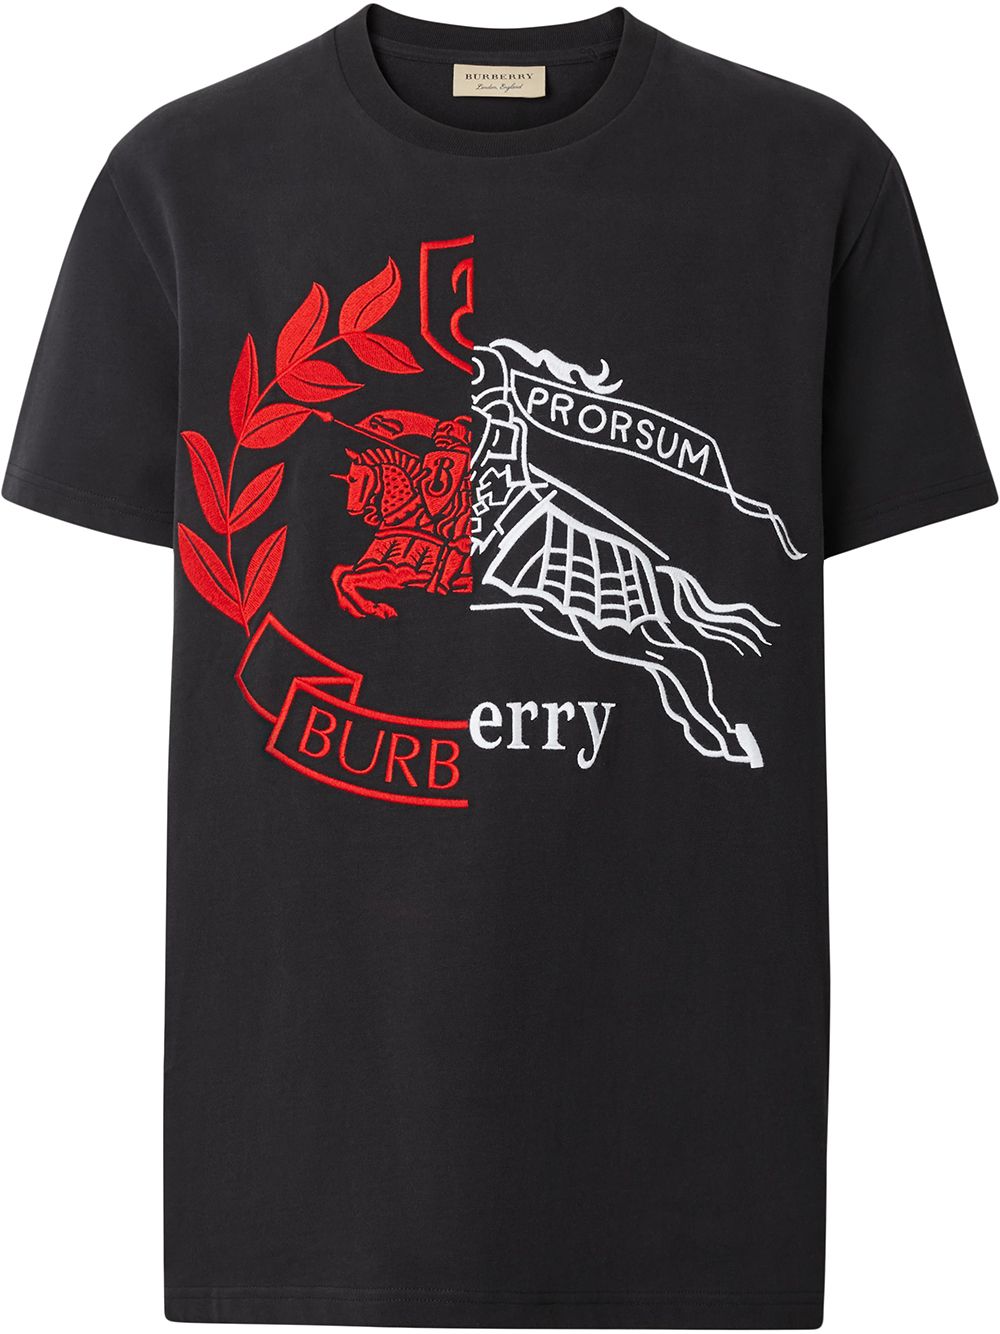 фото Burberry футболка с контрастным гербом